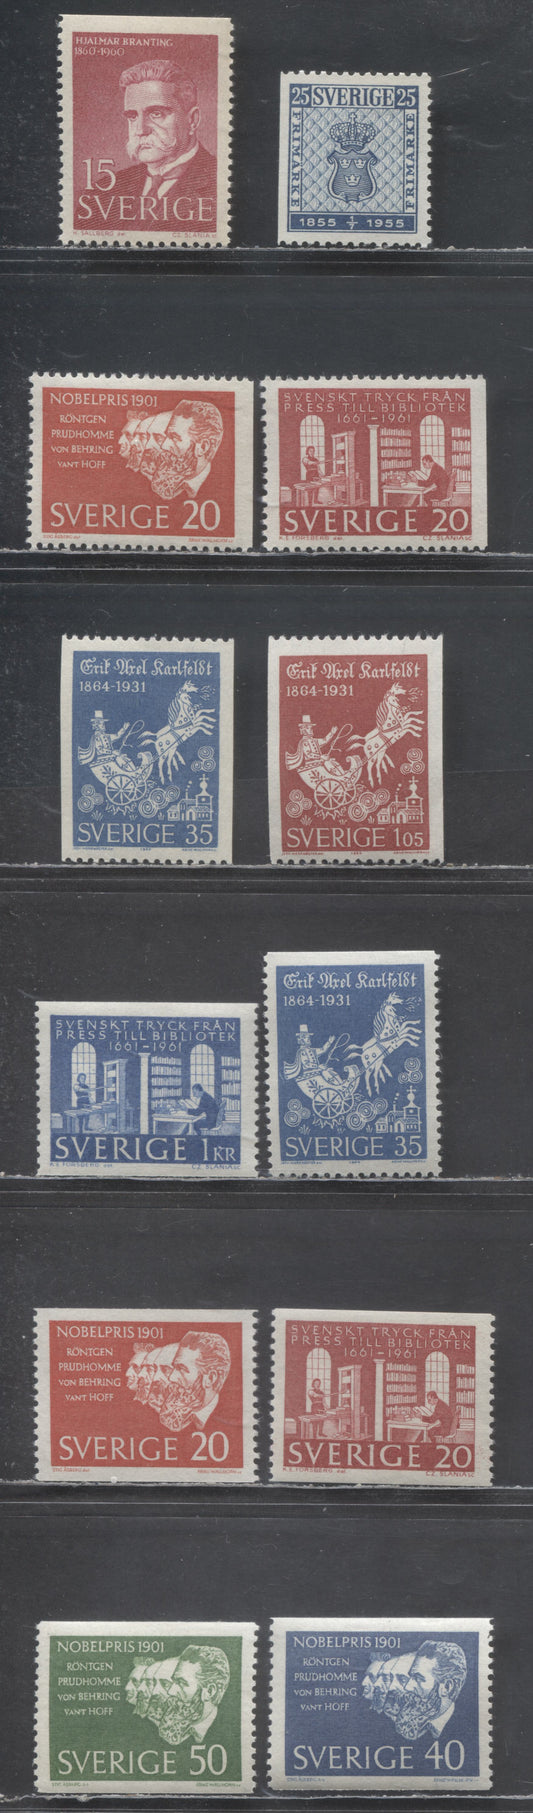 Sweden SC#476/642 1955 Stamp Centenary - 1964 Erik Axel Karfeldt Issues, 12 VFNH Singles, 2017 Scott Cat. $14.1